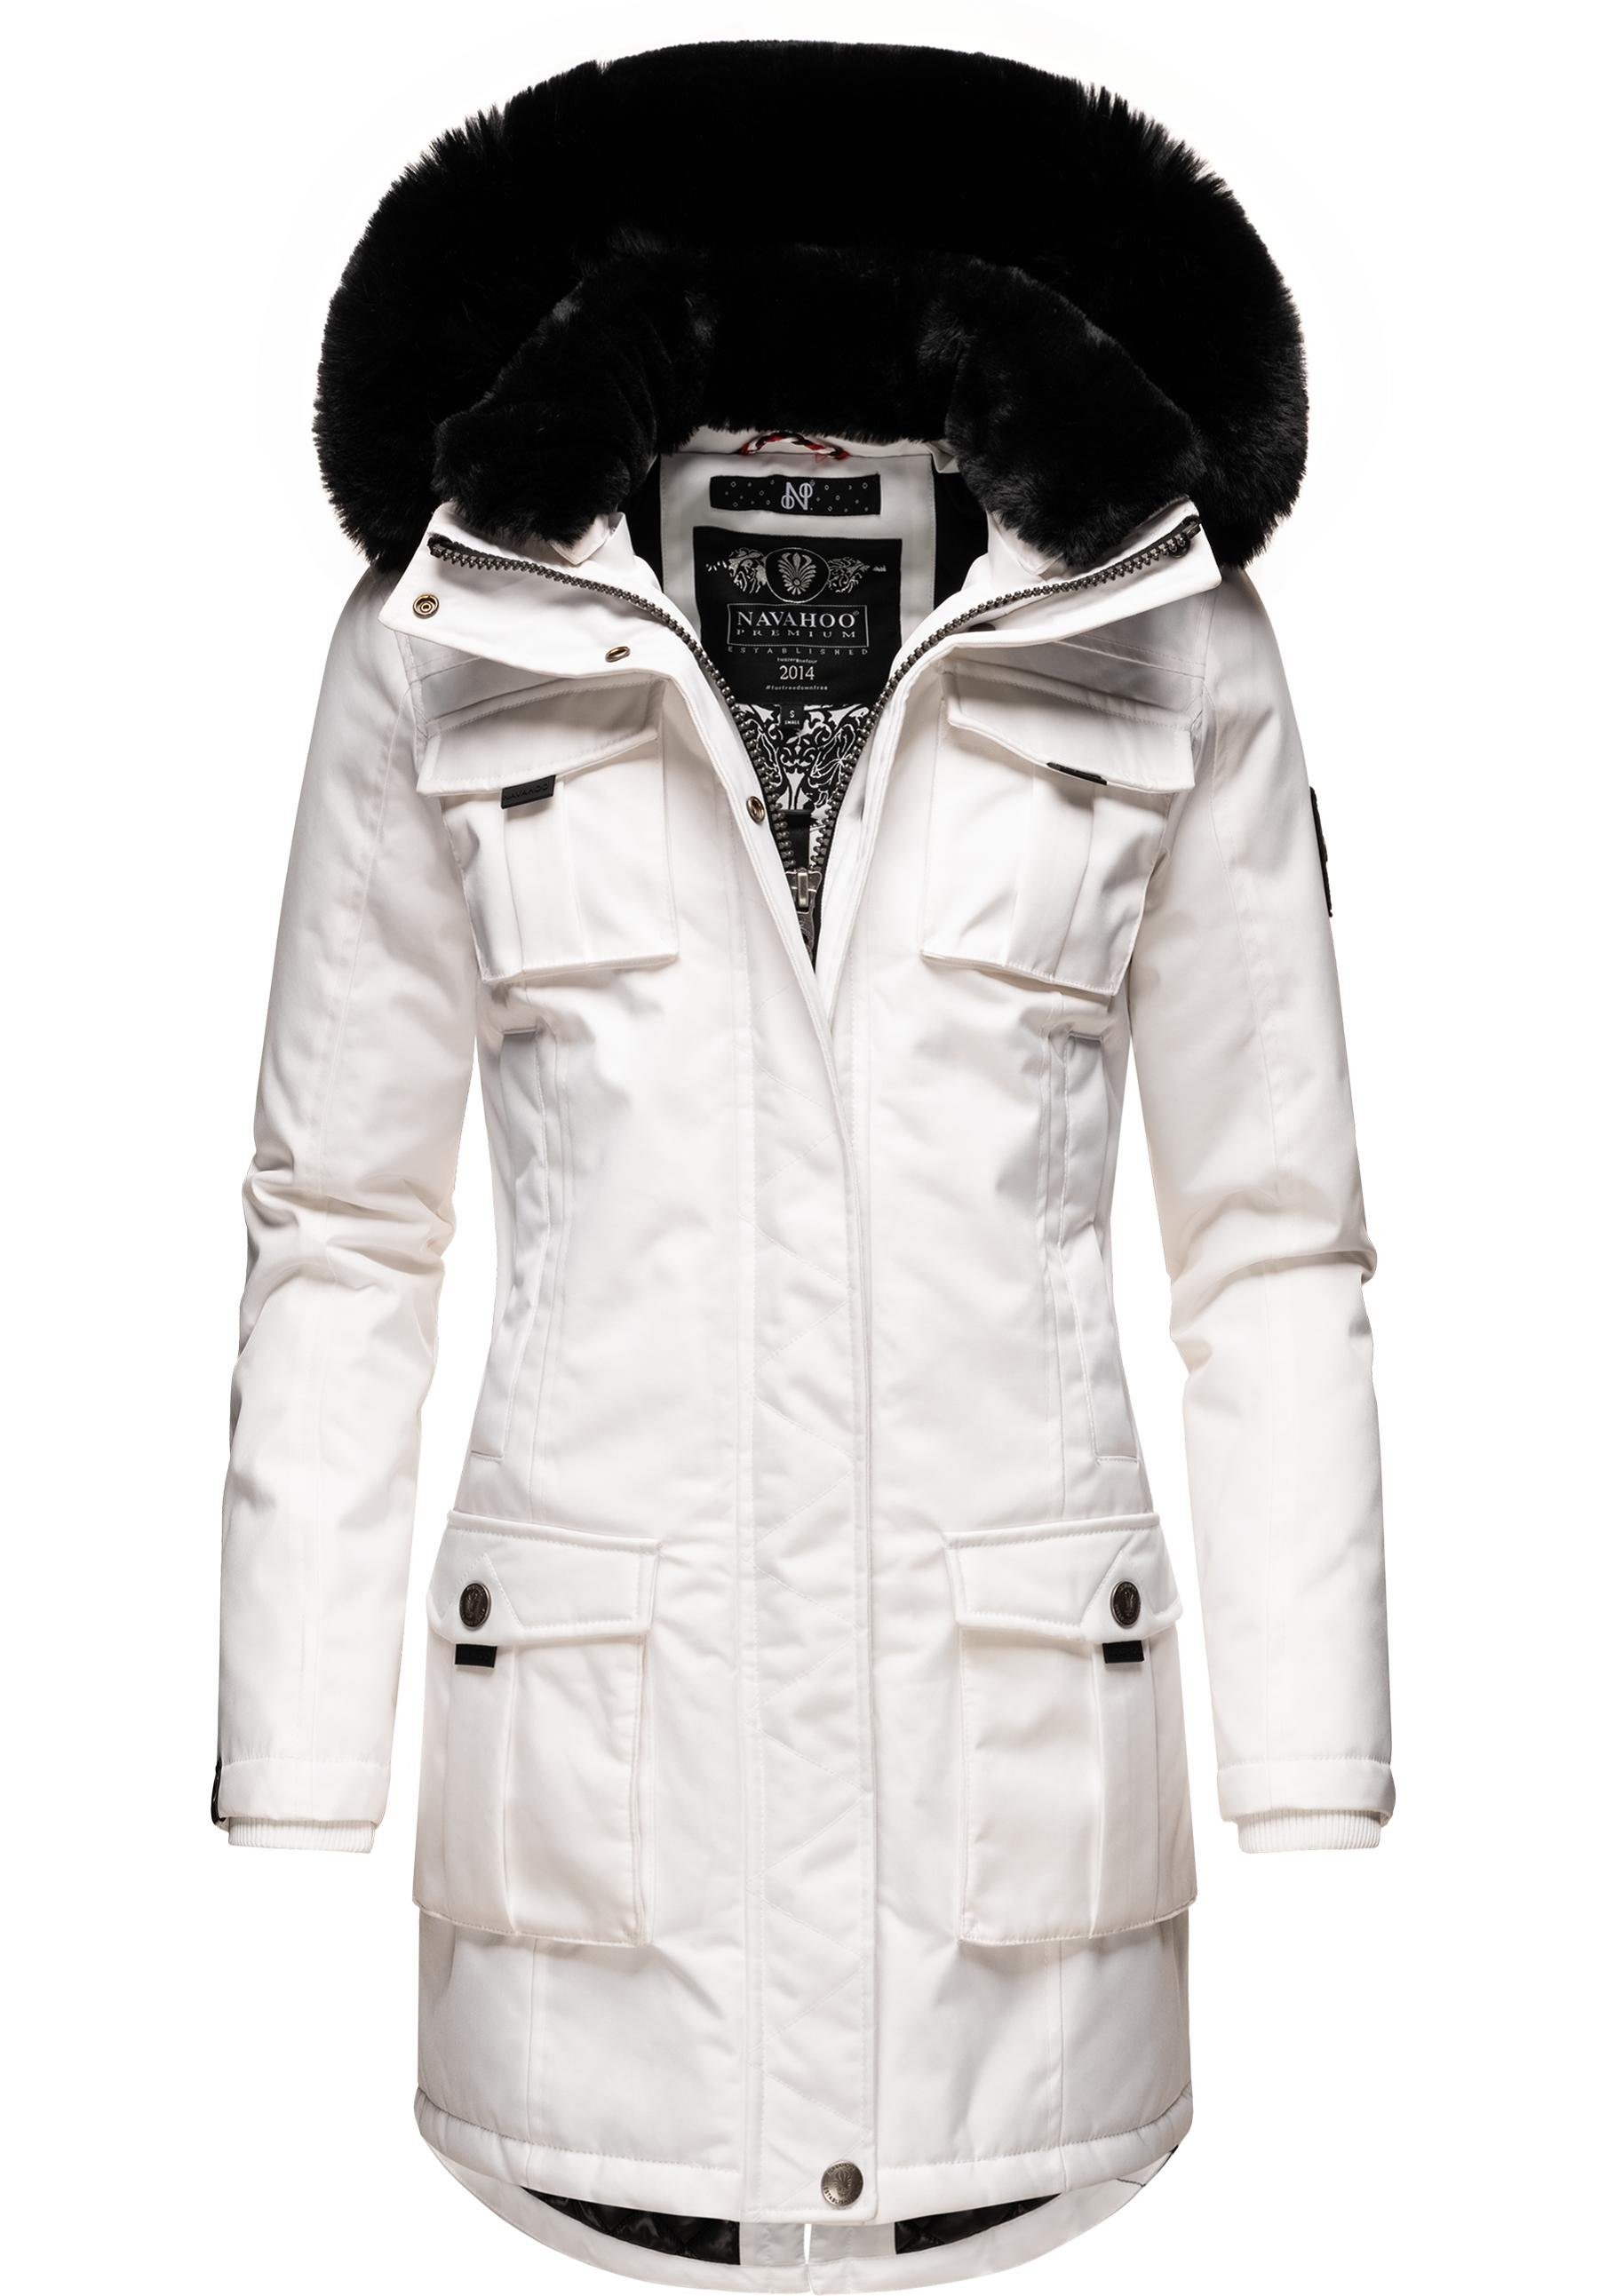 Weißer Mantel online kaufen | OTTO